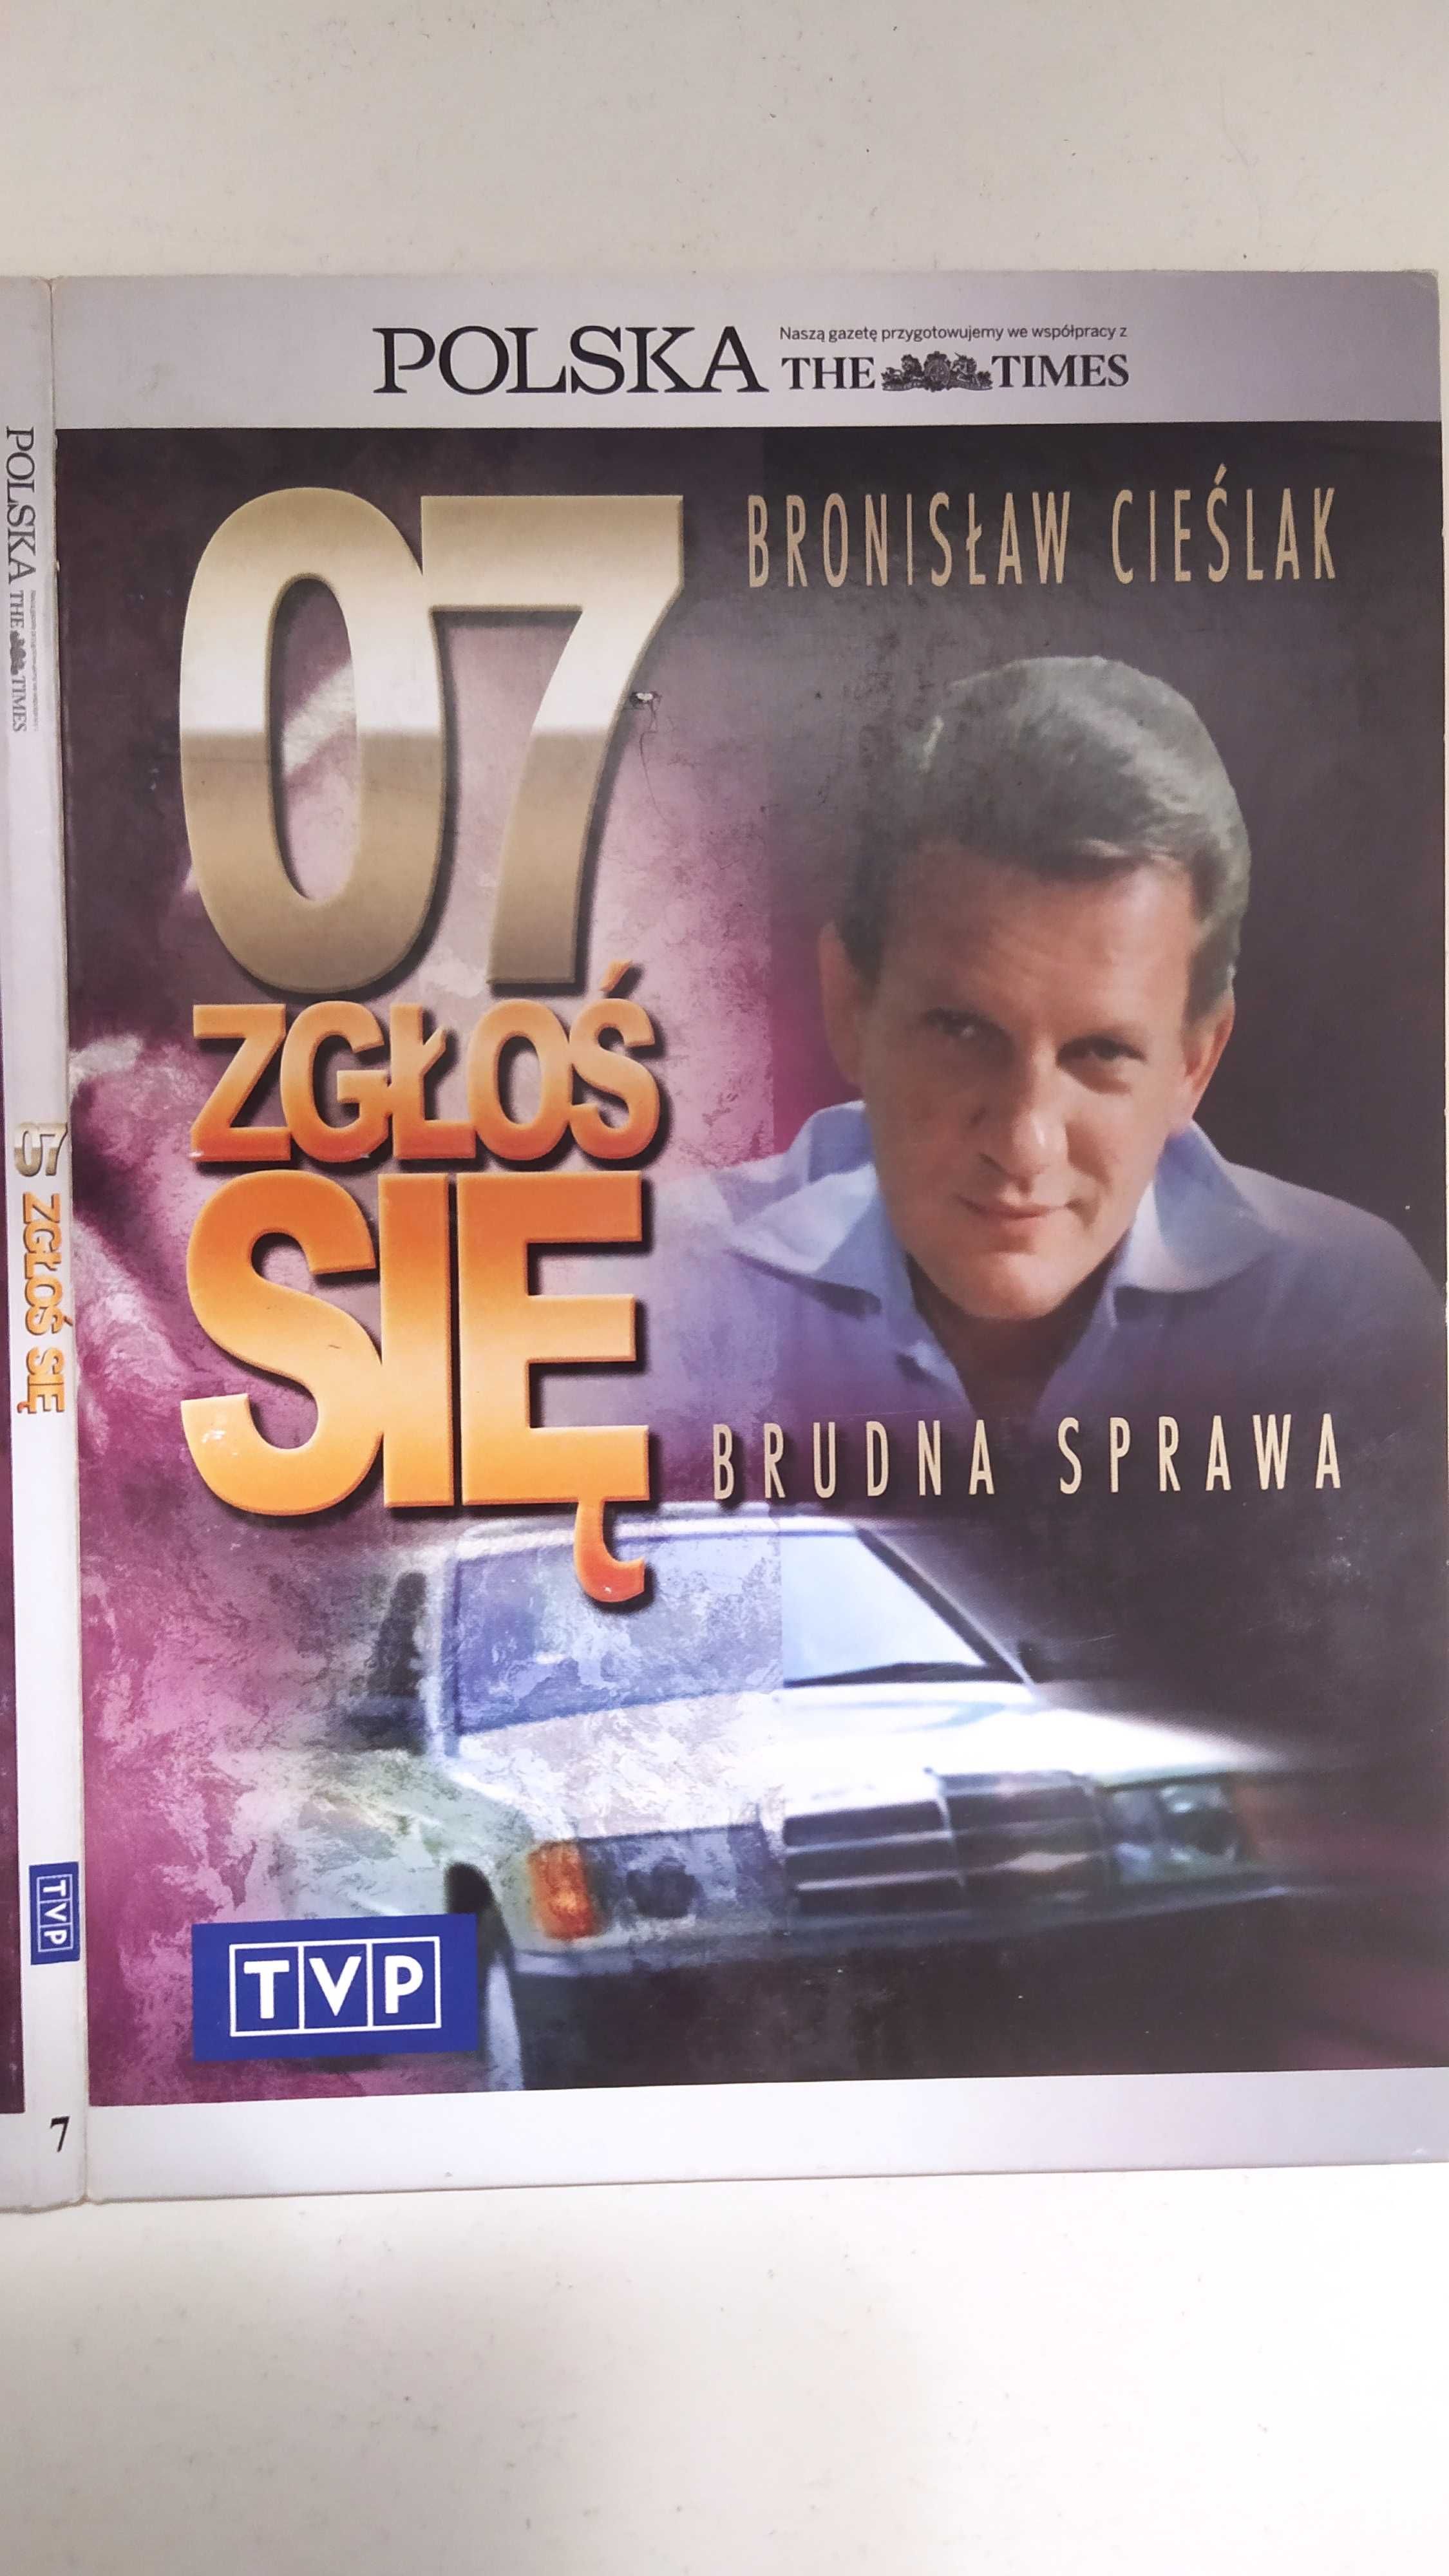 07 Zgłoś się 7 Brudna sprawa Cieślak Polska Times VCD